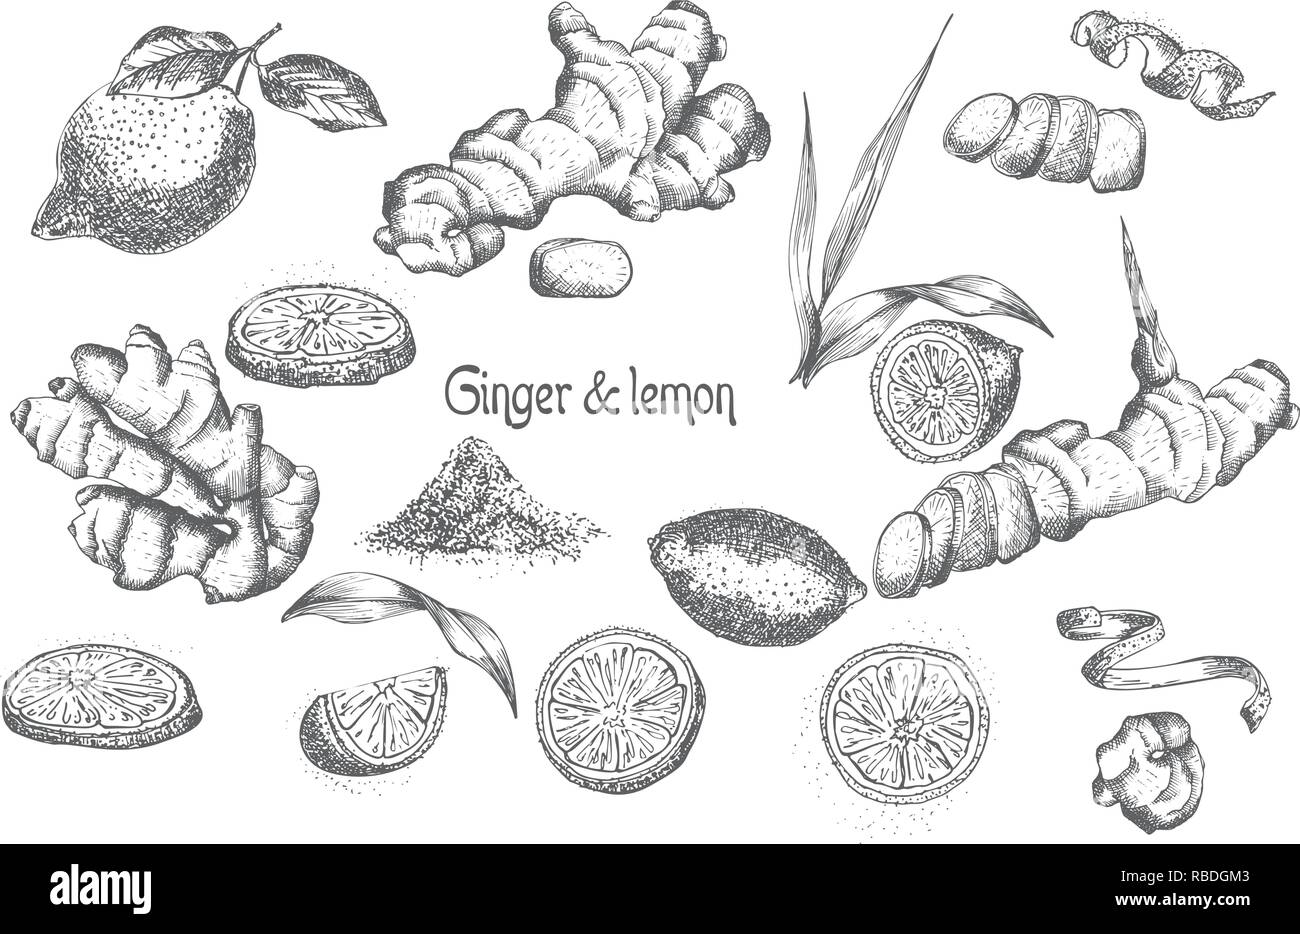 Set Hand gezeichnet von Ingwer Wurzeln, lebt, Blumen und Zitrone in schwarzer Farbe auf weißem Hintergrund. Retro Vintage Grafikdesign. botanische Zeichnung, Gravur Stil Stock Vektor